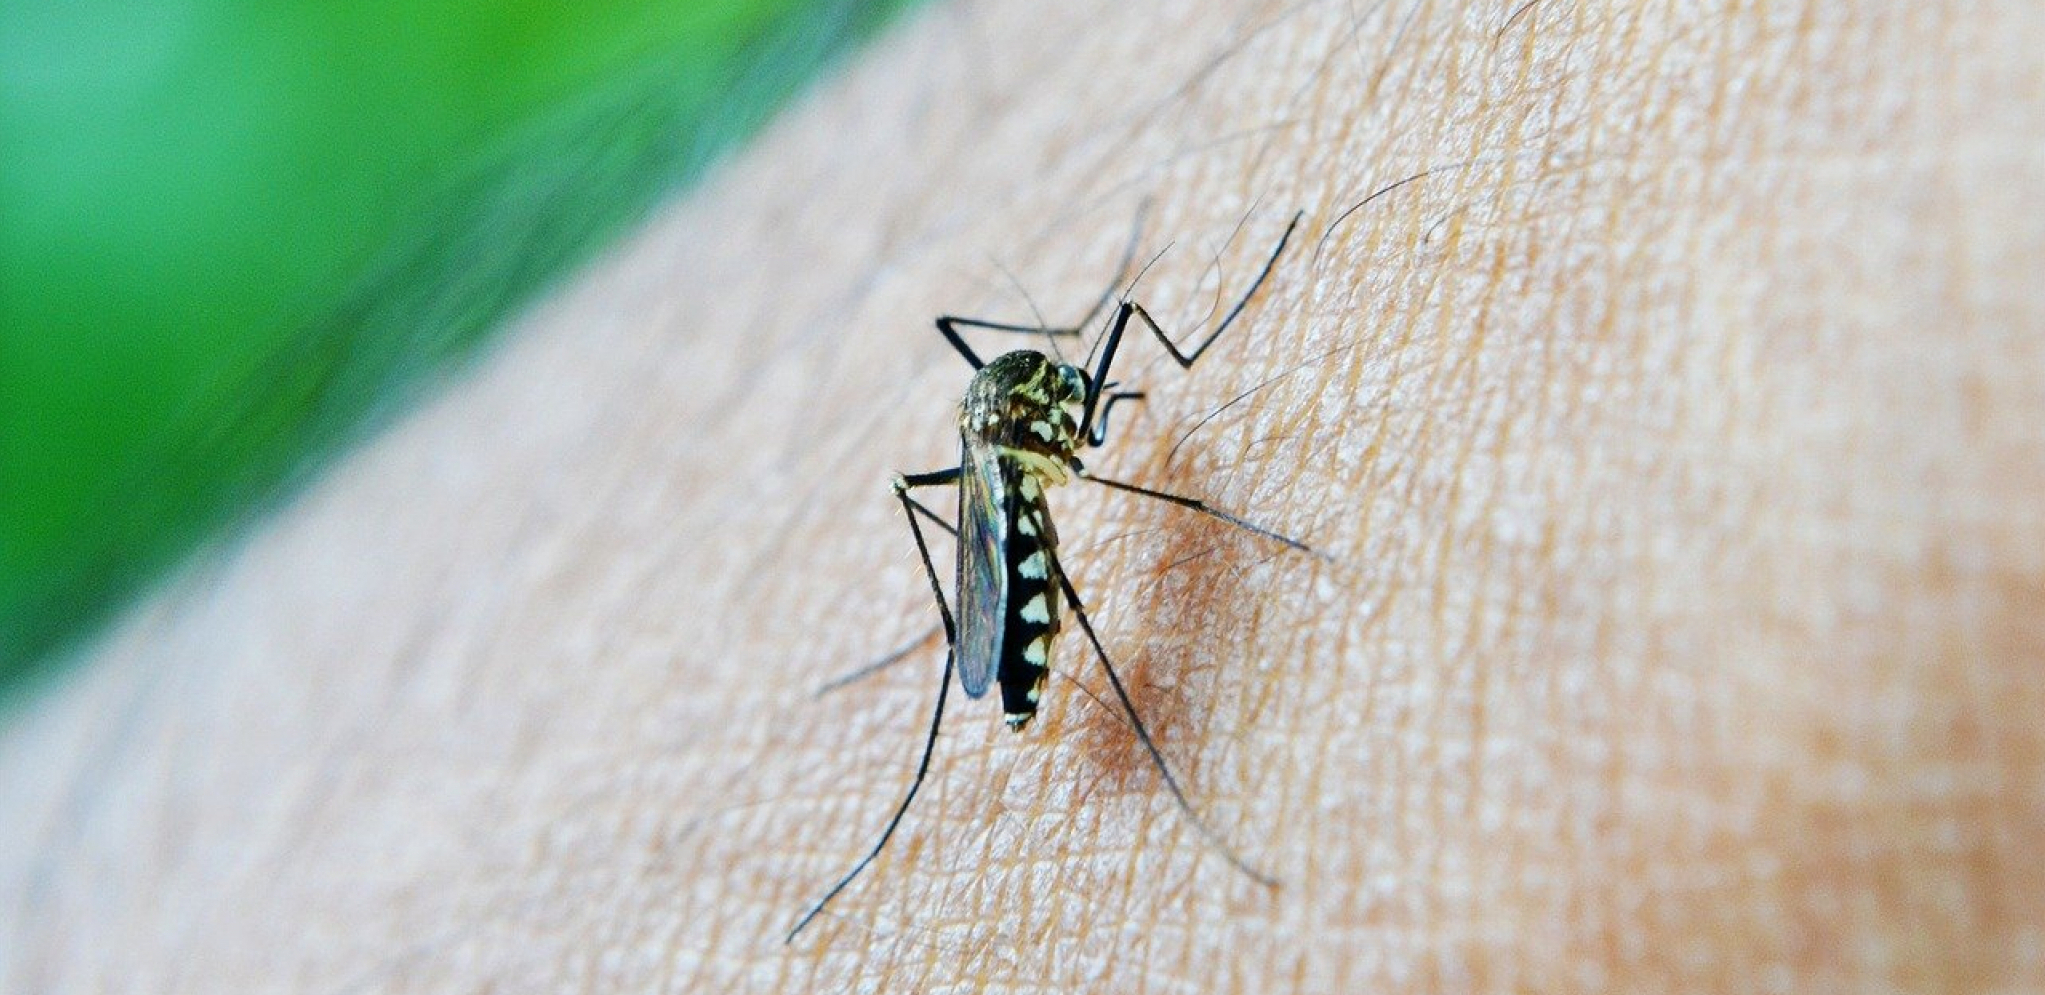 Pet starinskih lekova: Kada vas ujede komarac probajte neki od ovih trikova